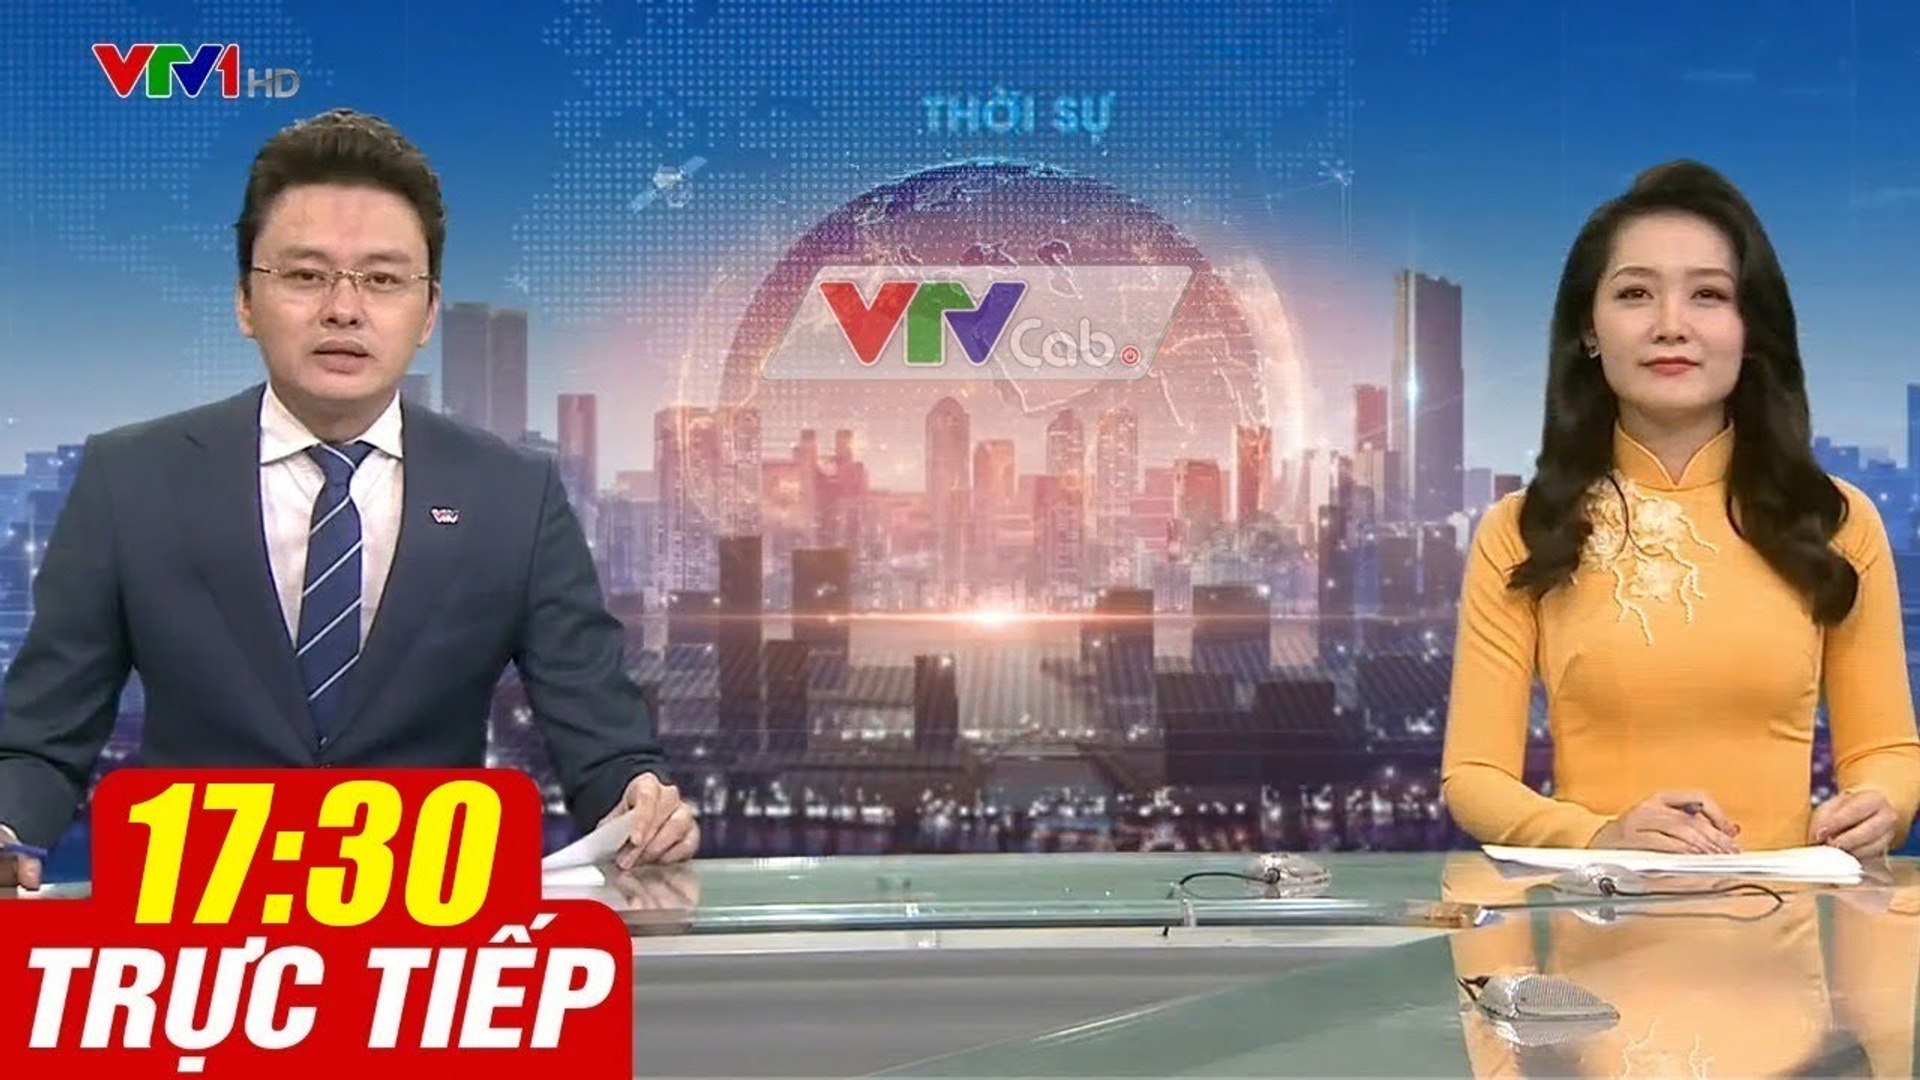 Trực Tiếp VIỆT NAM HÔM NAY 17h30 ngày 12.09.2020  Tin tức thời sự VTV1 mới nhất hôm nay